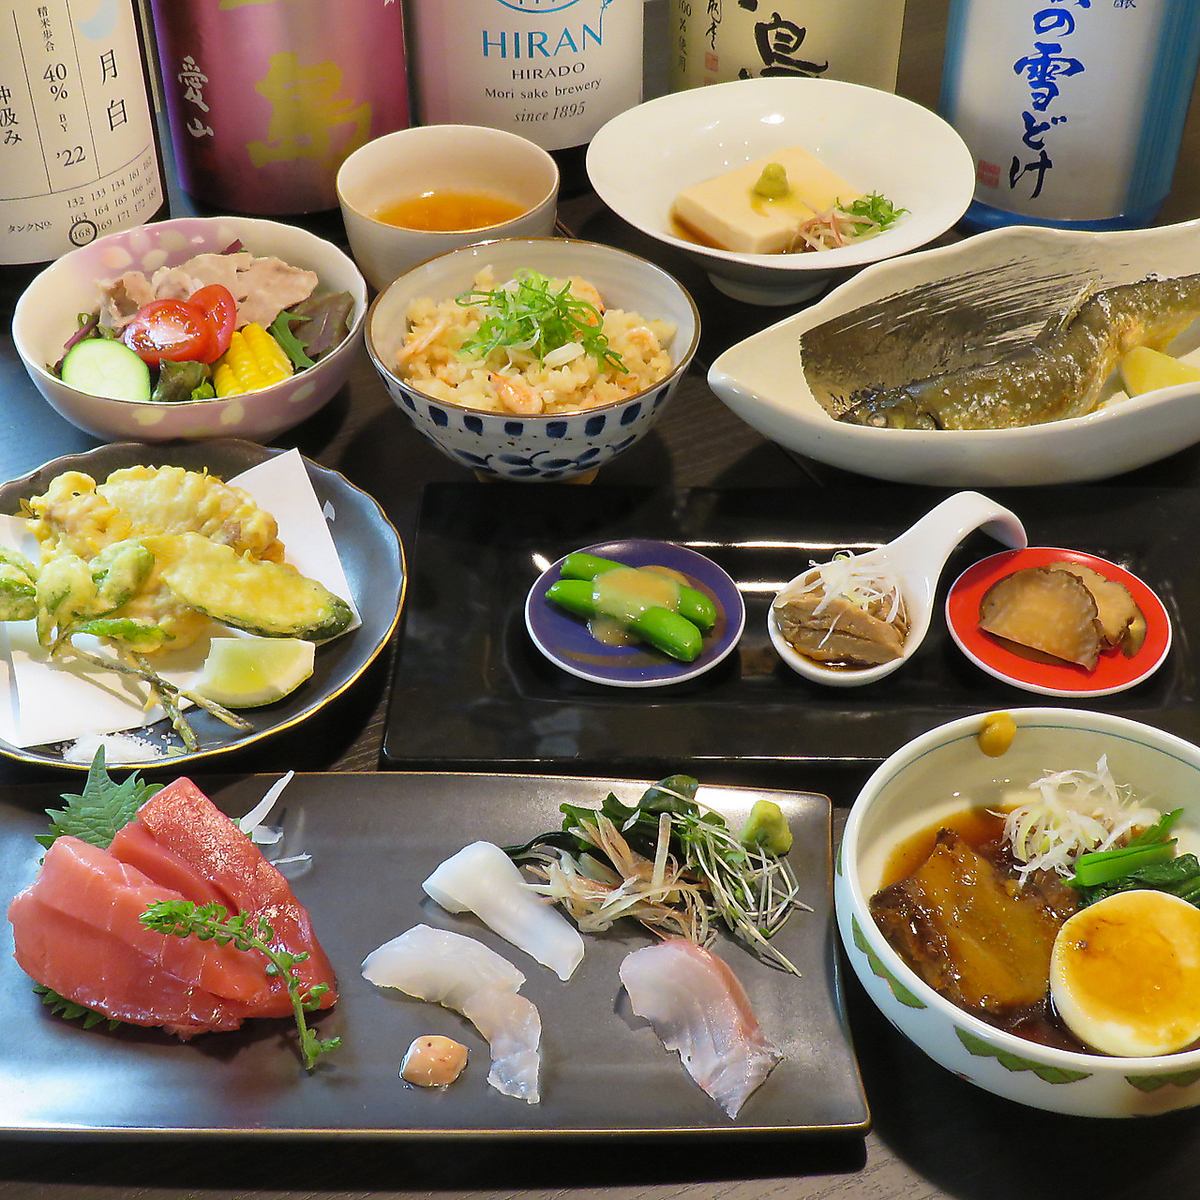 即使是美食家也能对我们的特色菜肴和稀有的日本酒感到满意。